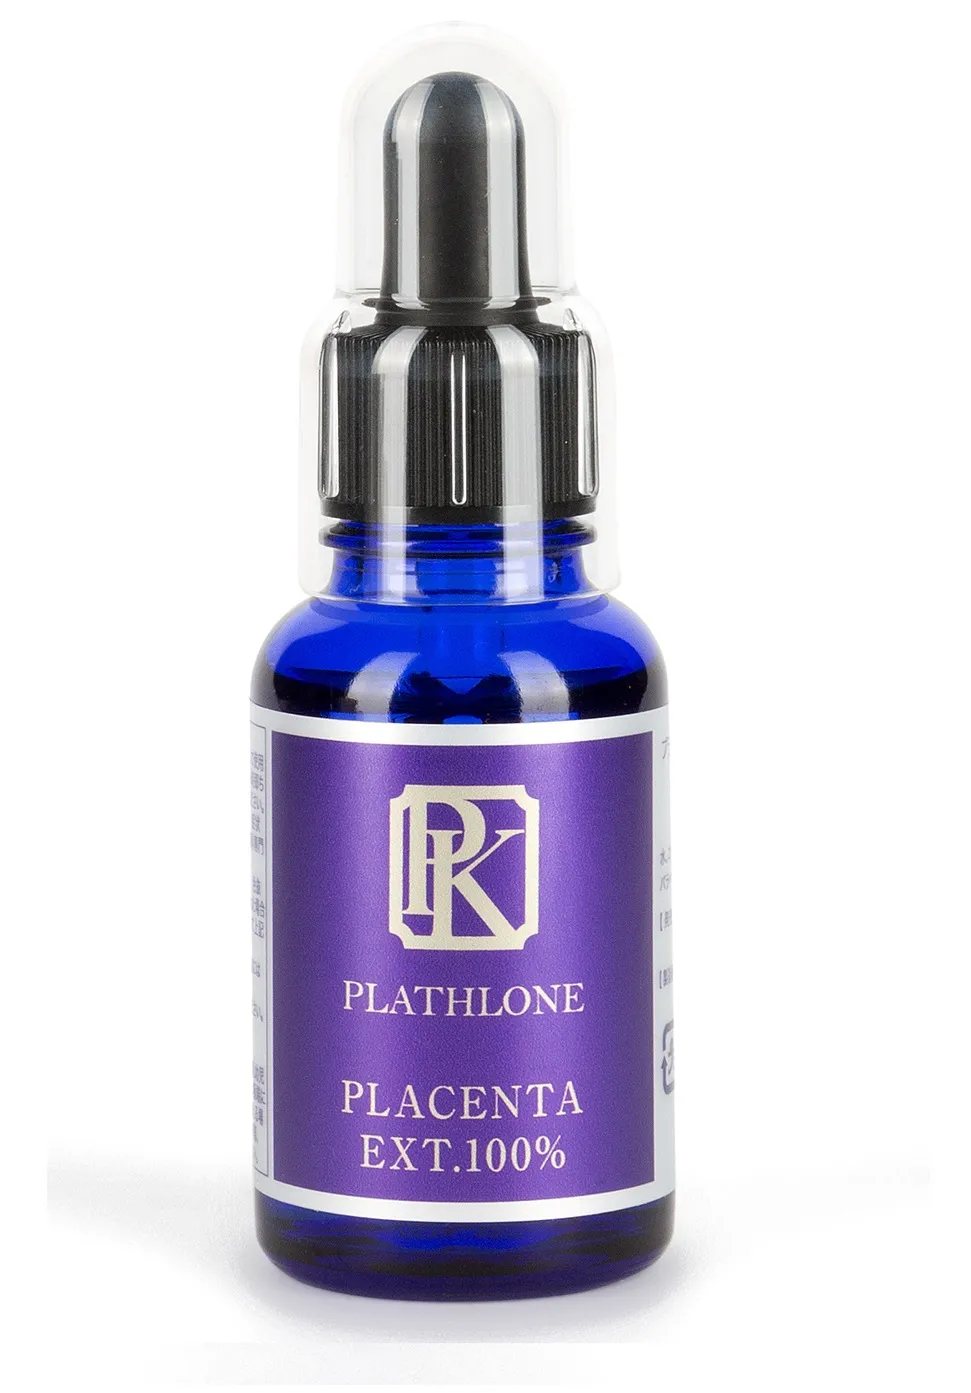 Сыворотка для лица с экстрактом плаценты 100%  Placenta Extract Plathlone